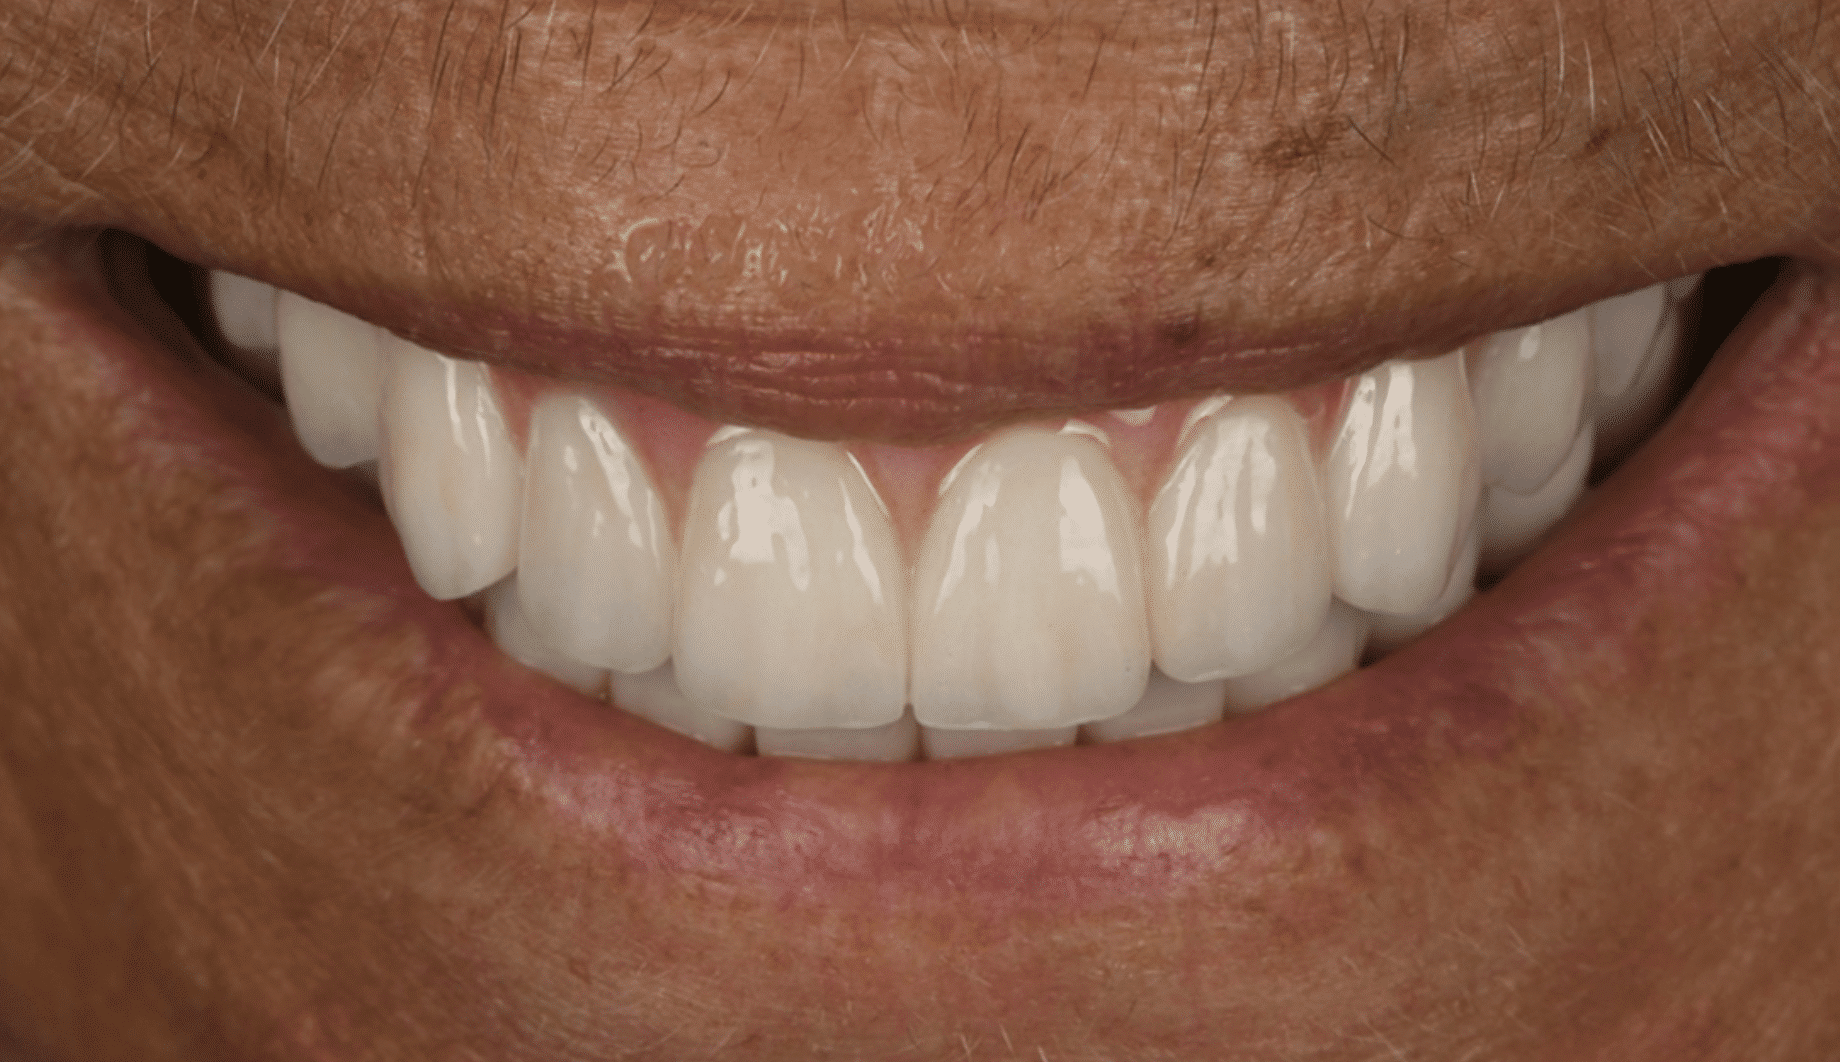 יישור שיניים מהיר - מה הן השיטות?